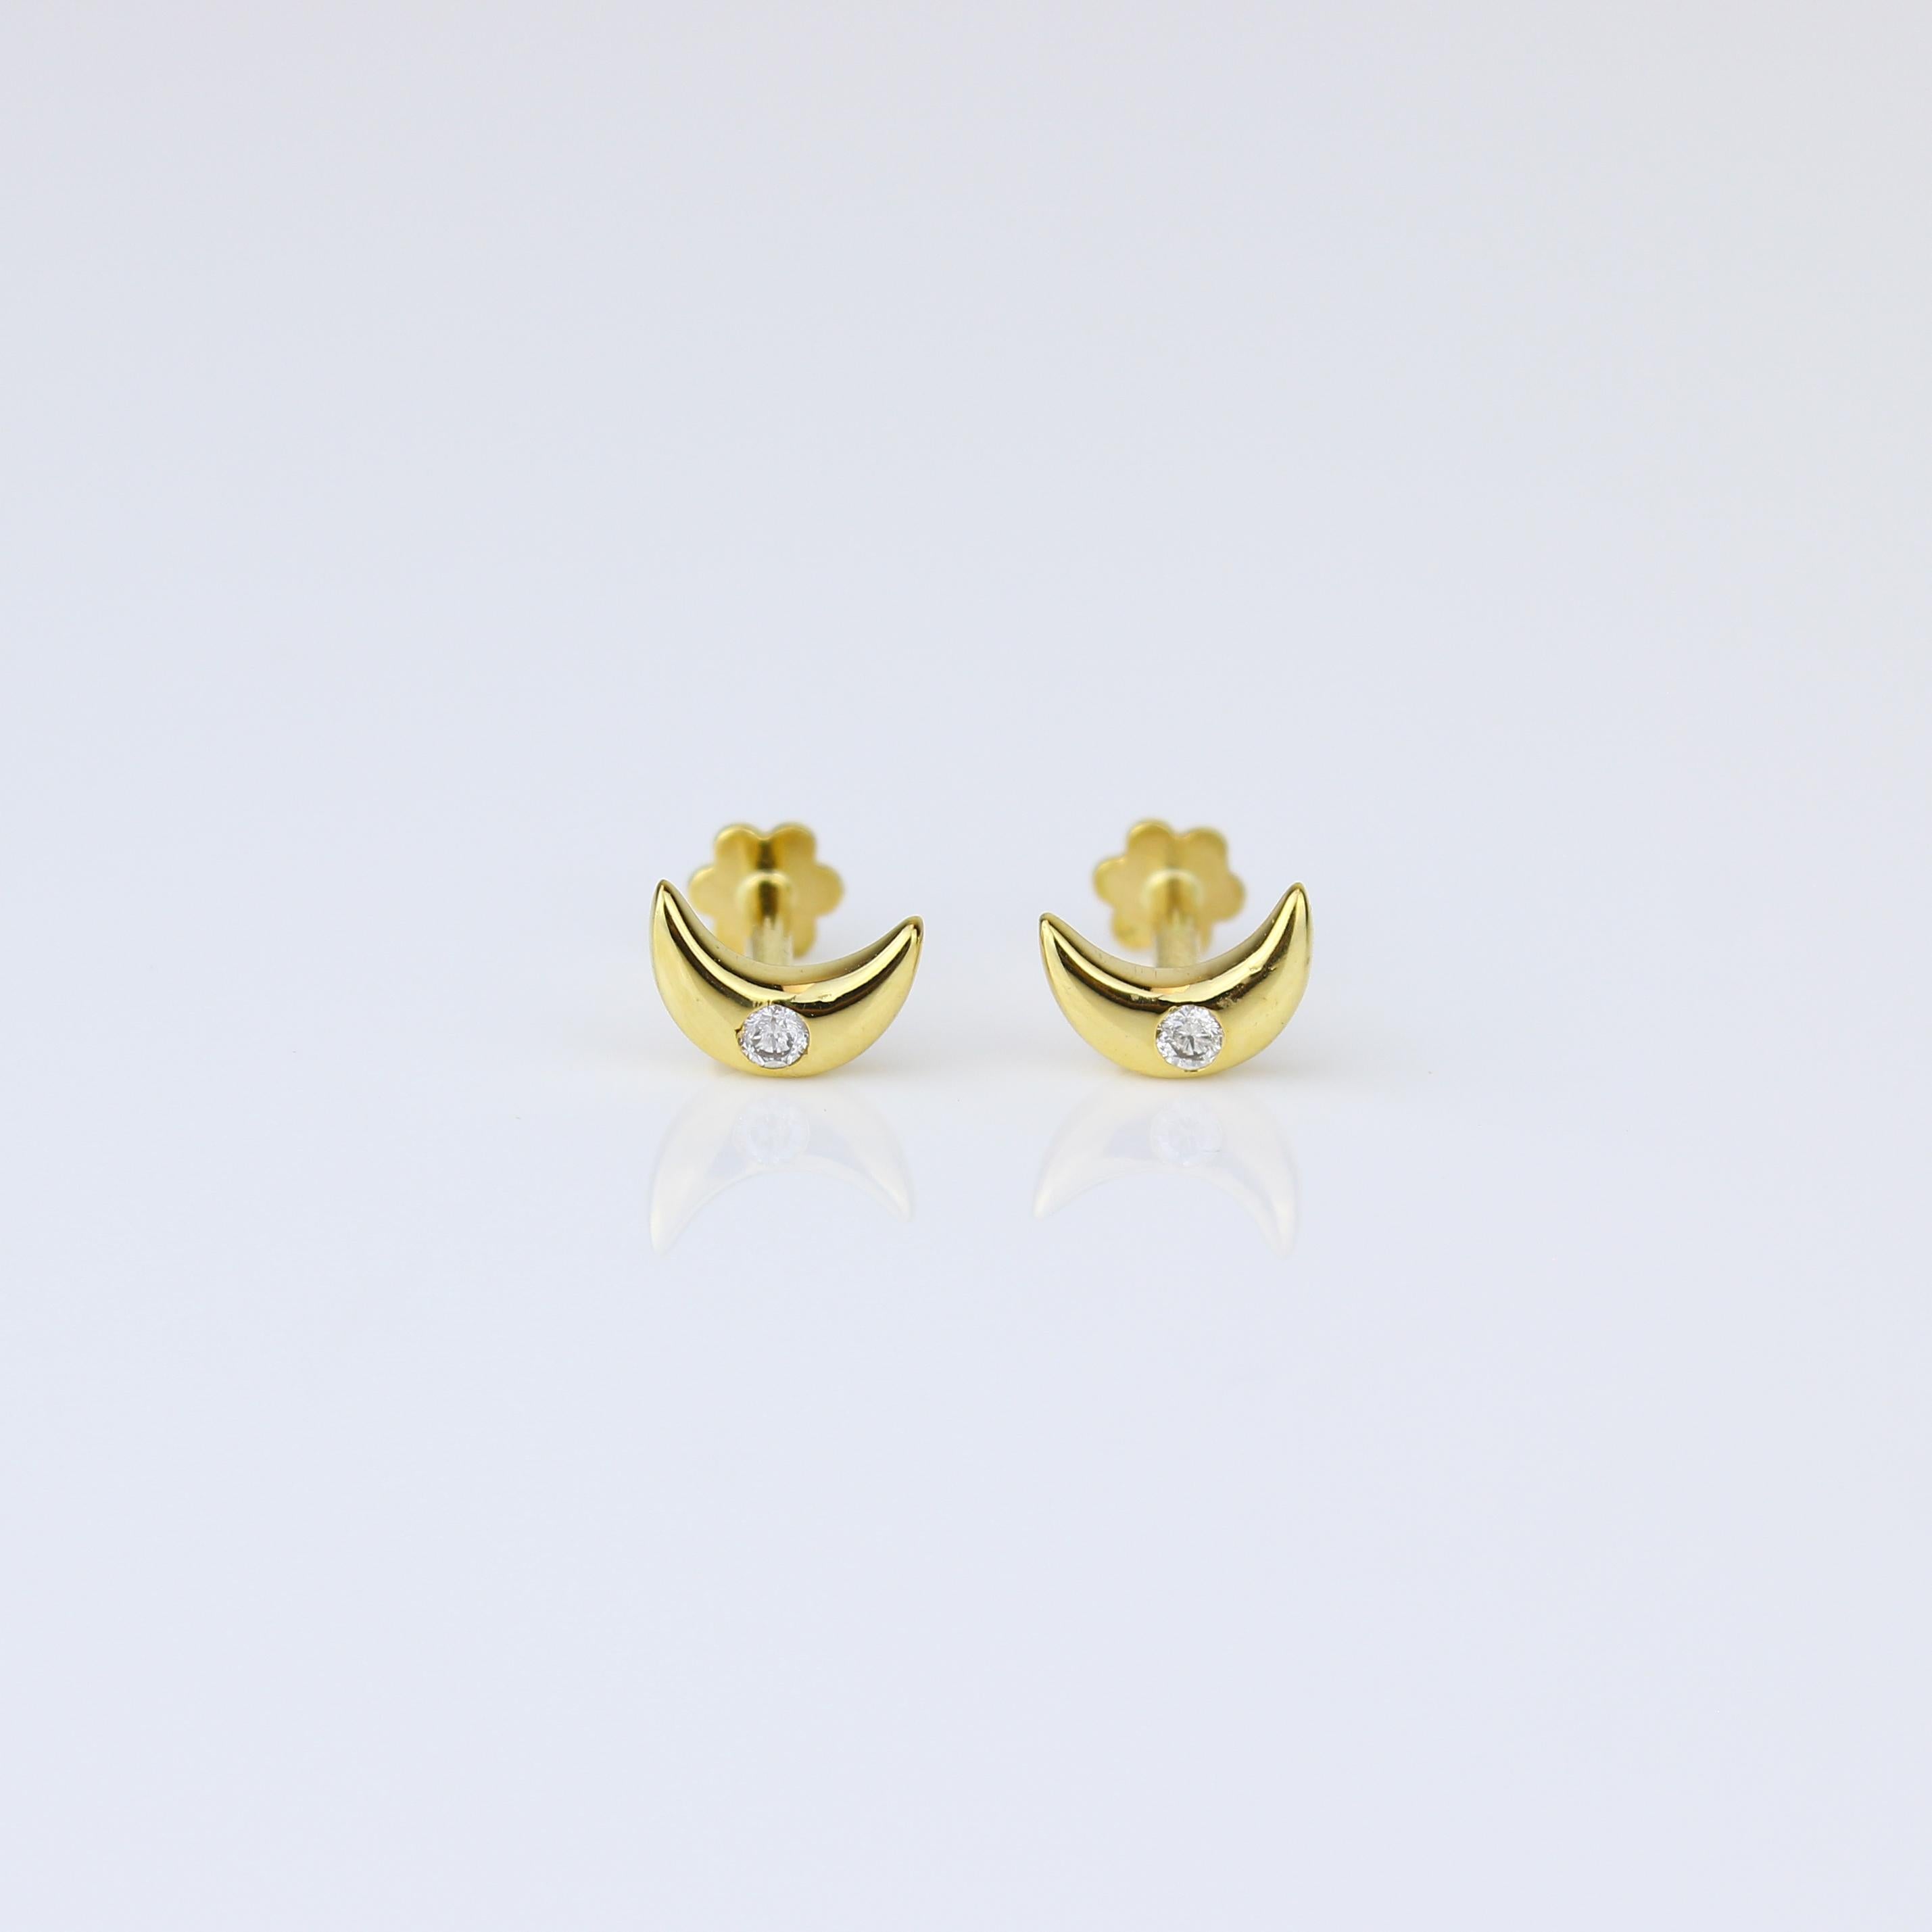 Elegante Mondsichel-Diamant-Ohrringe speziell für Mädchen (Kinder) in opulentem 18-karätigem Gold. Diese bezaubernden Ohrringe mit anmutigen Mondsichelmustern und zarten Diamanten verleihen dem Stil Ihres Kindes einen Hauch von himmlischem Charme